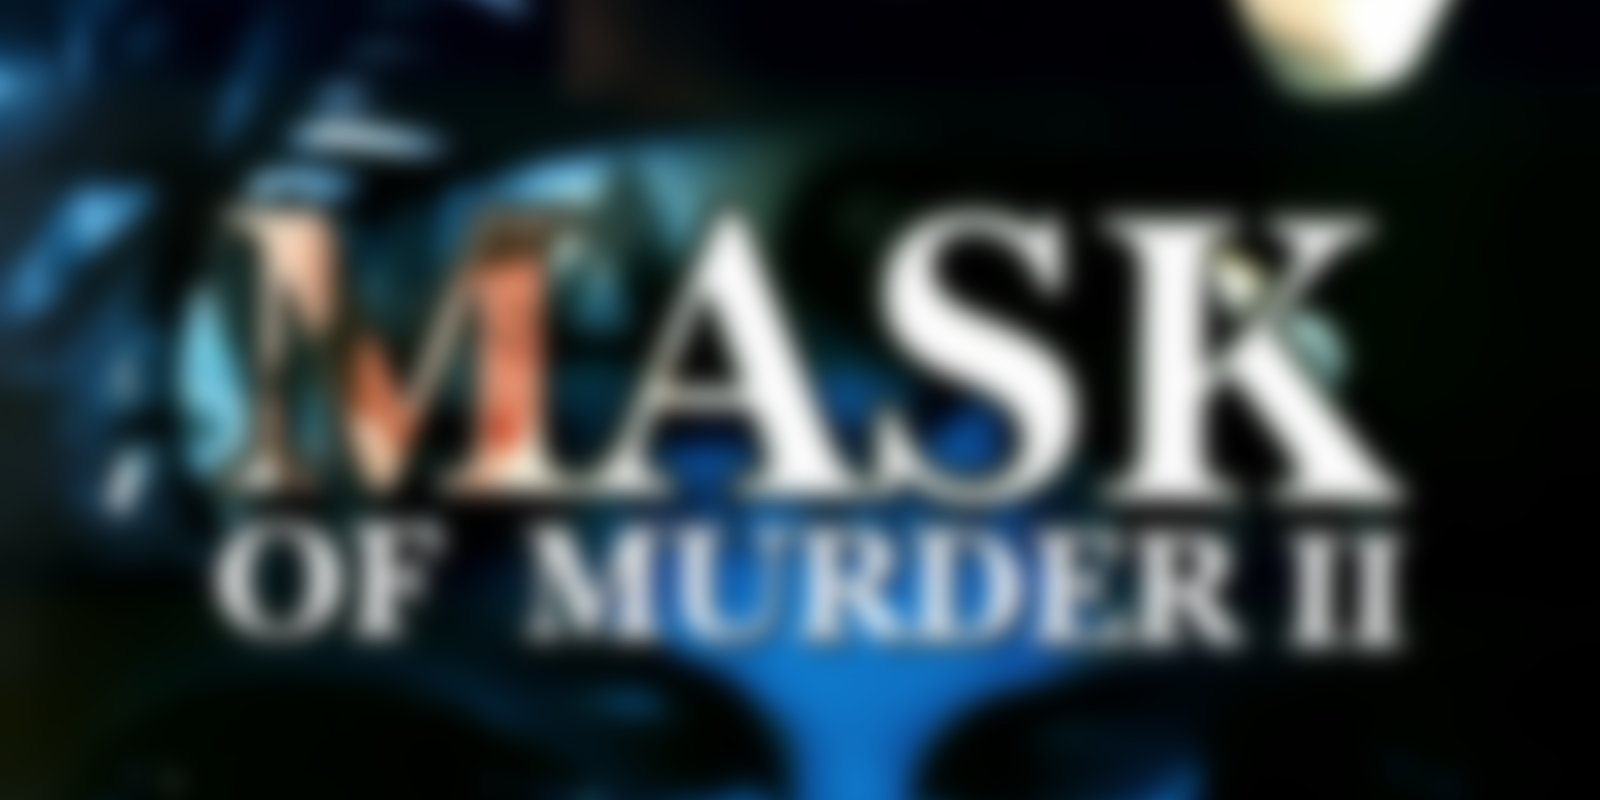 Doppelganger - Mask of Murder 2